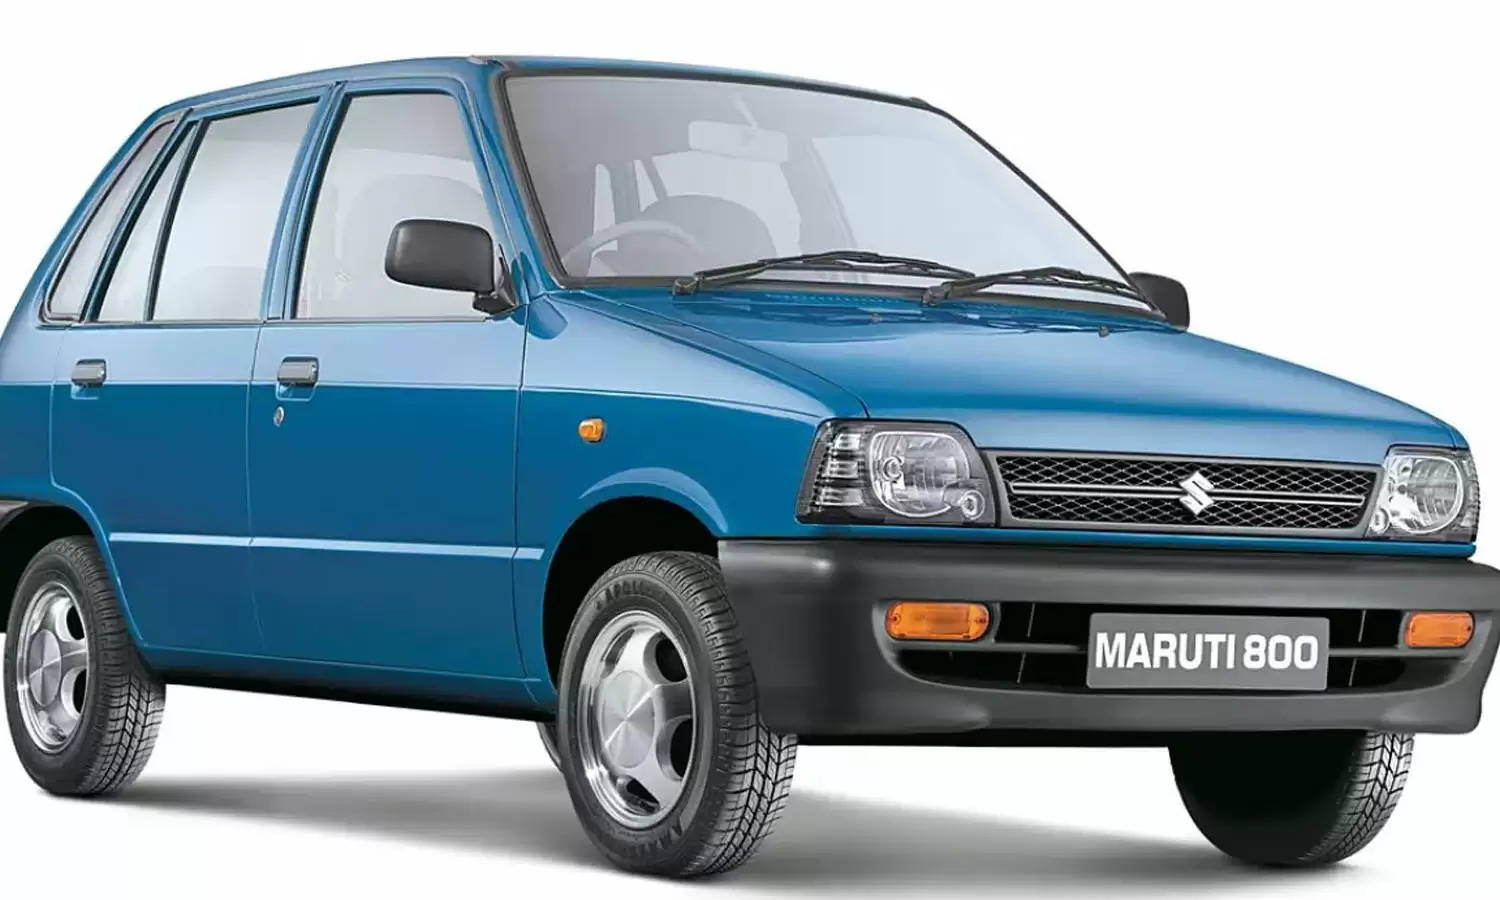 यहां सिर्फ 19 हजार की कीमत में बेची जा रही है शानदार Maruti 800, जानिए इस ऑफर और कार की डिटेल